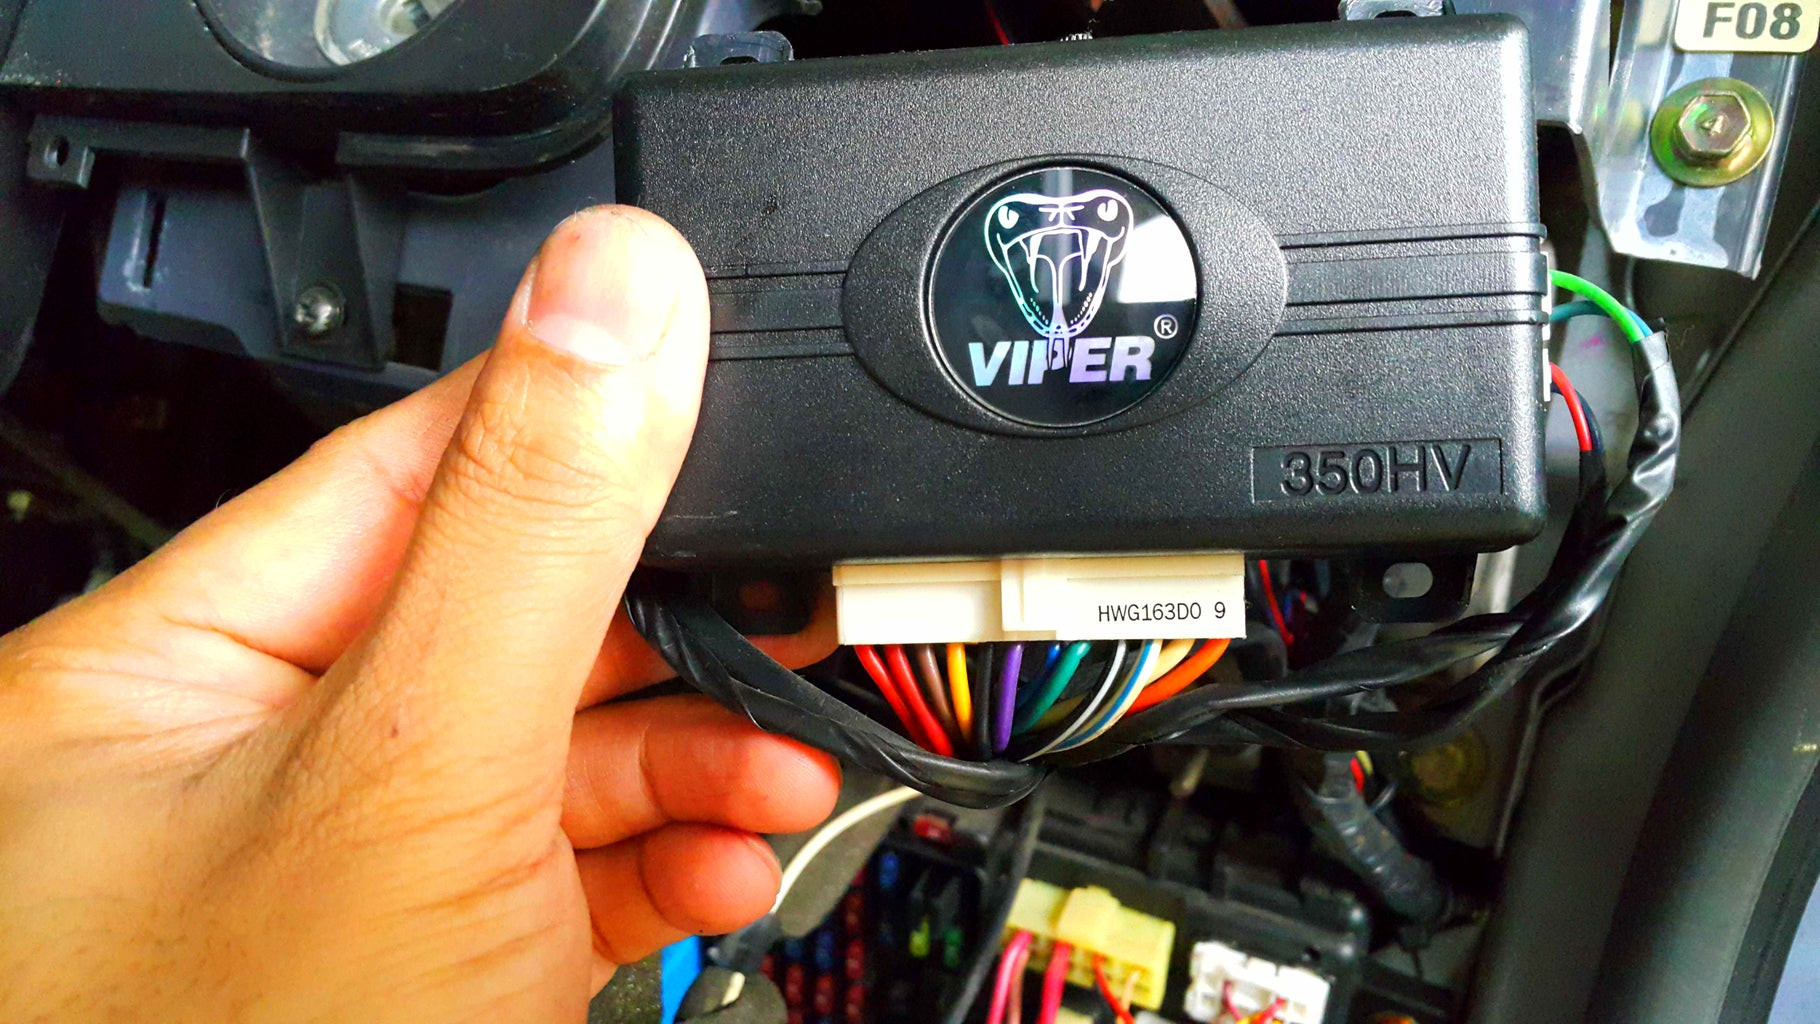 Viper Alarm 5706v Installation Manual Car Remote Starter Installation! : 11 Steps - Instructables